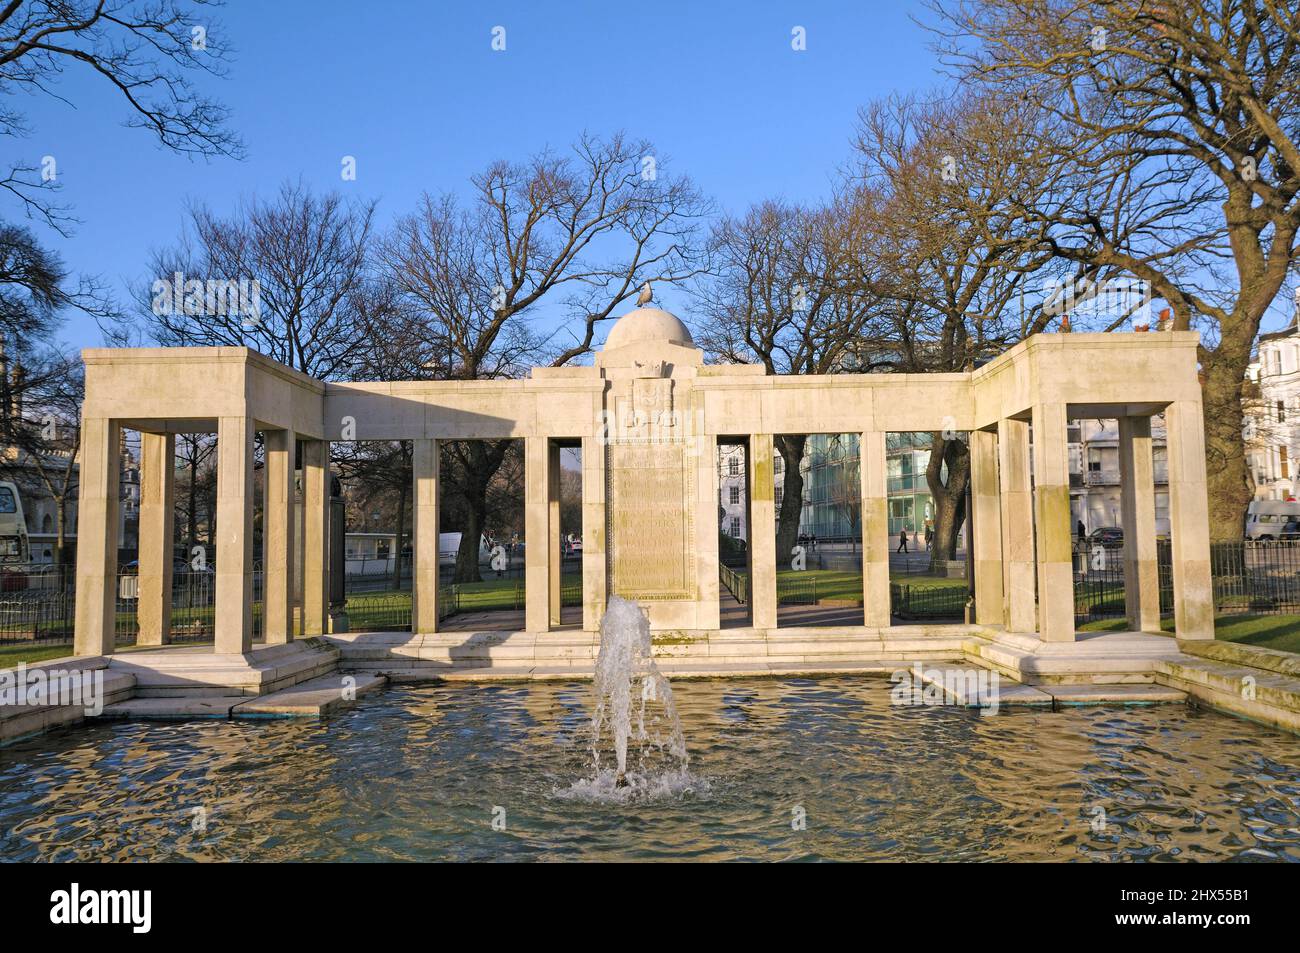 Brighton War Memorial, que conmemora los Caídos de la Primera Guerra Mundial, Old Steine Gardens, City of Brighton and Hove, East Sussex, Inglaterra, Reino Unido Foto de stock